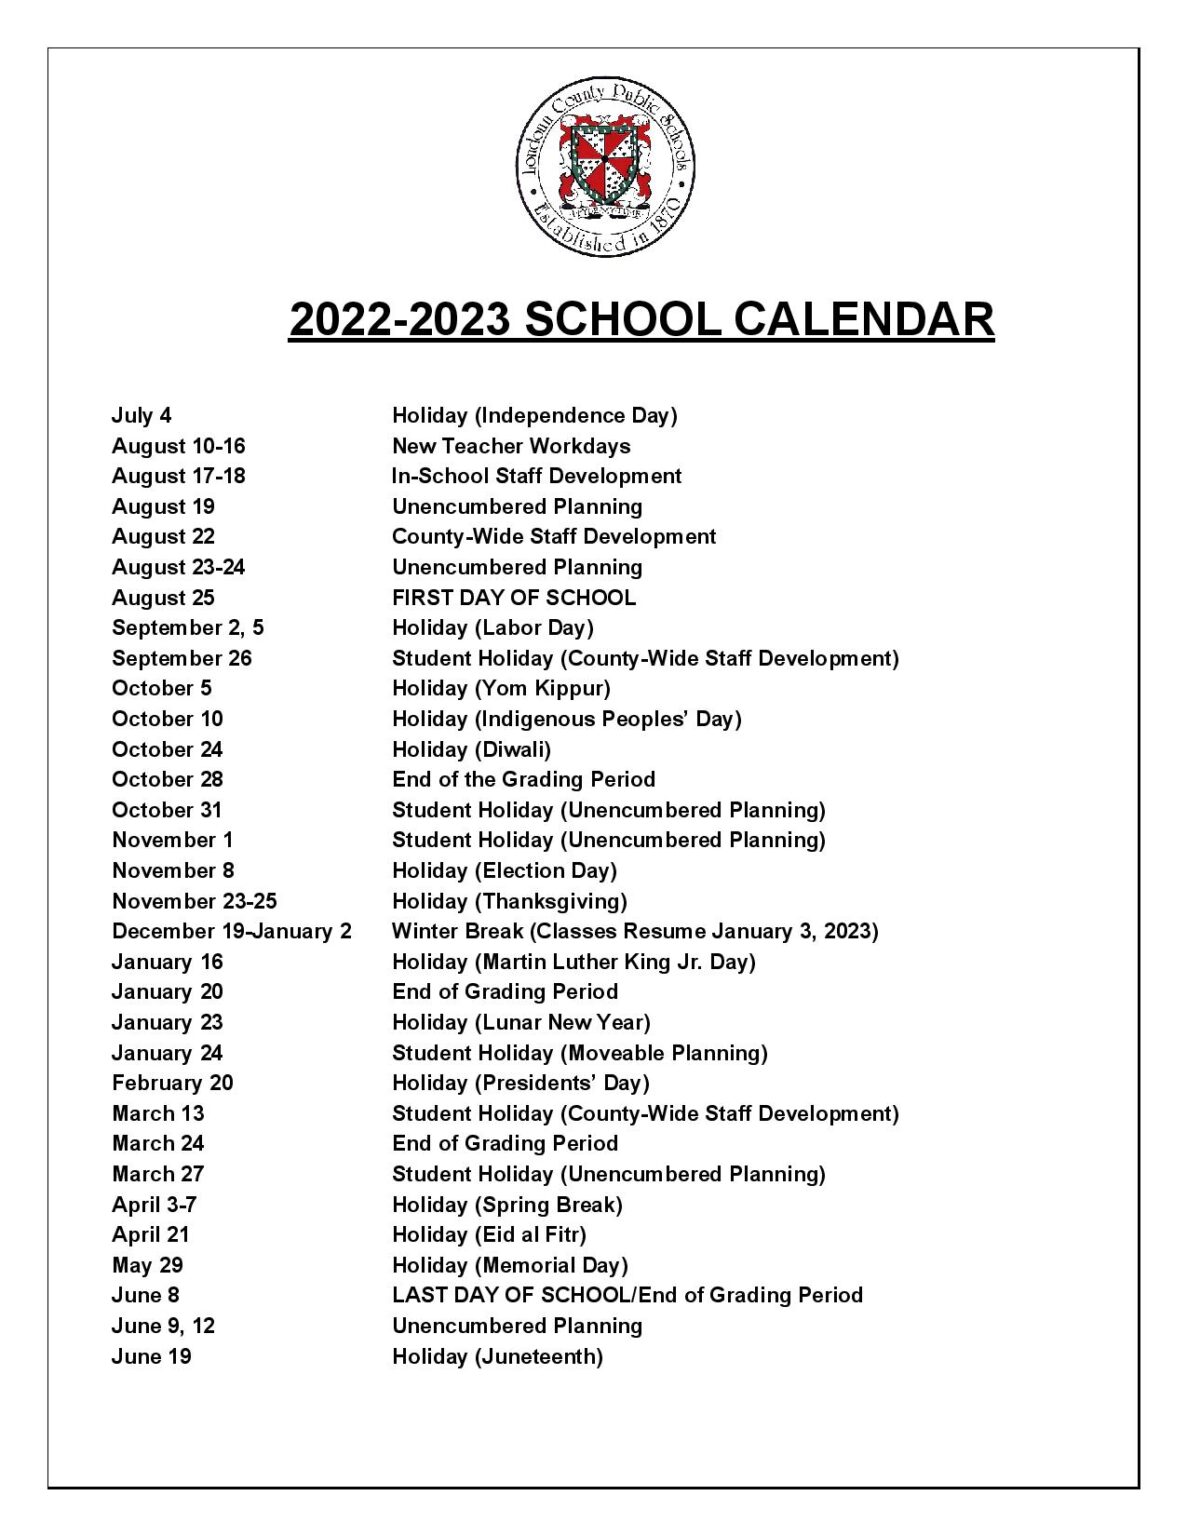 lcps-calendar-2023-24-customize-and-print